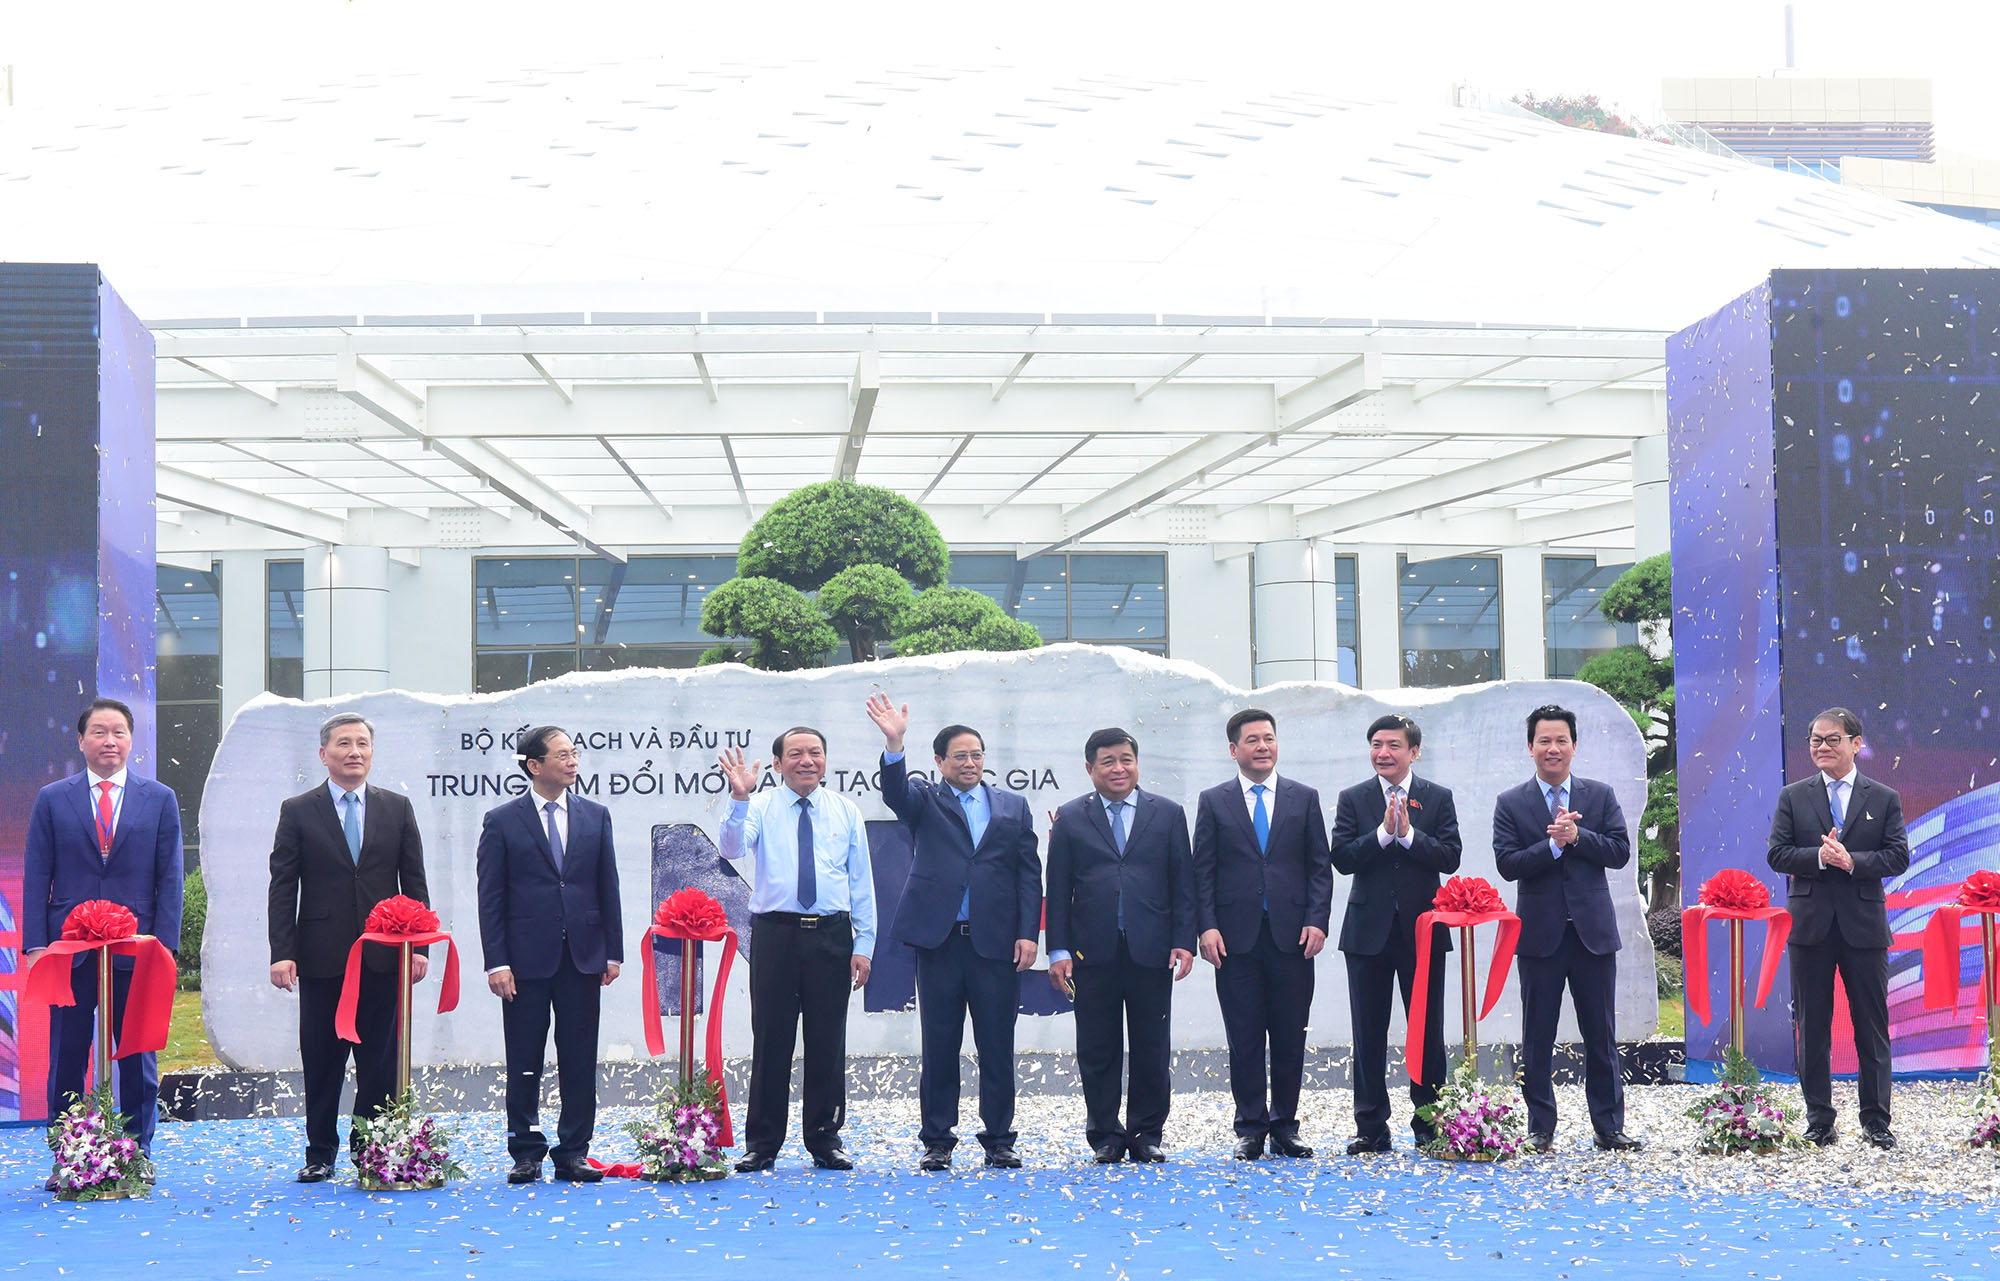 Thủ tướng cắt băng khánh thành Trung tâm Đổi mới Sáng tạo Quốc gia tại Hòa Lạc